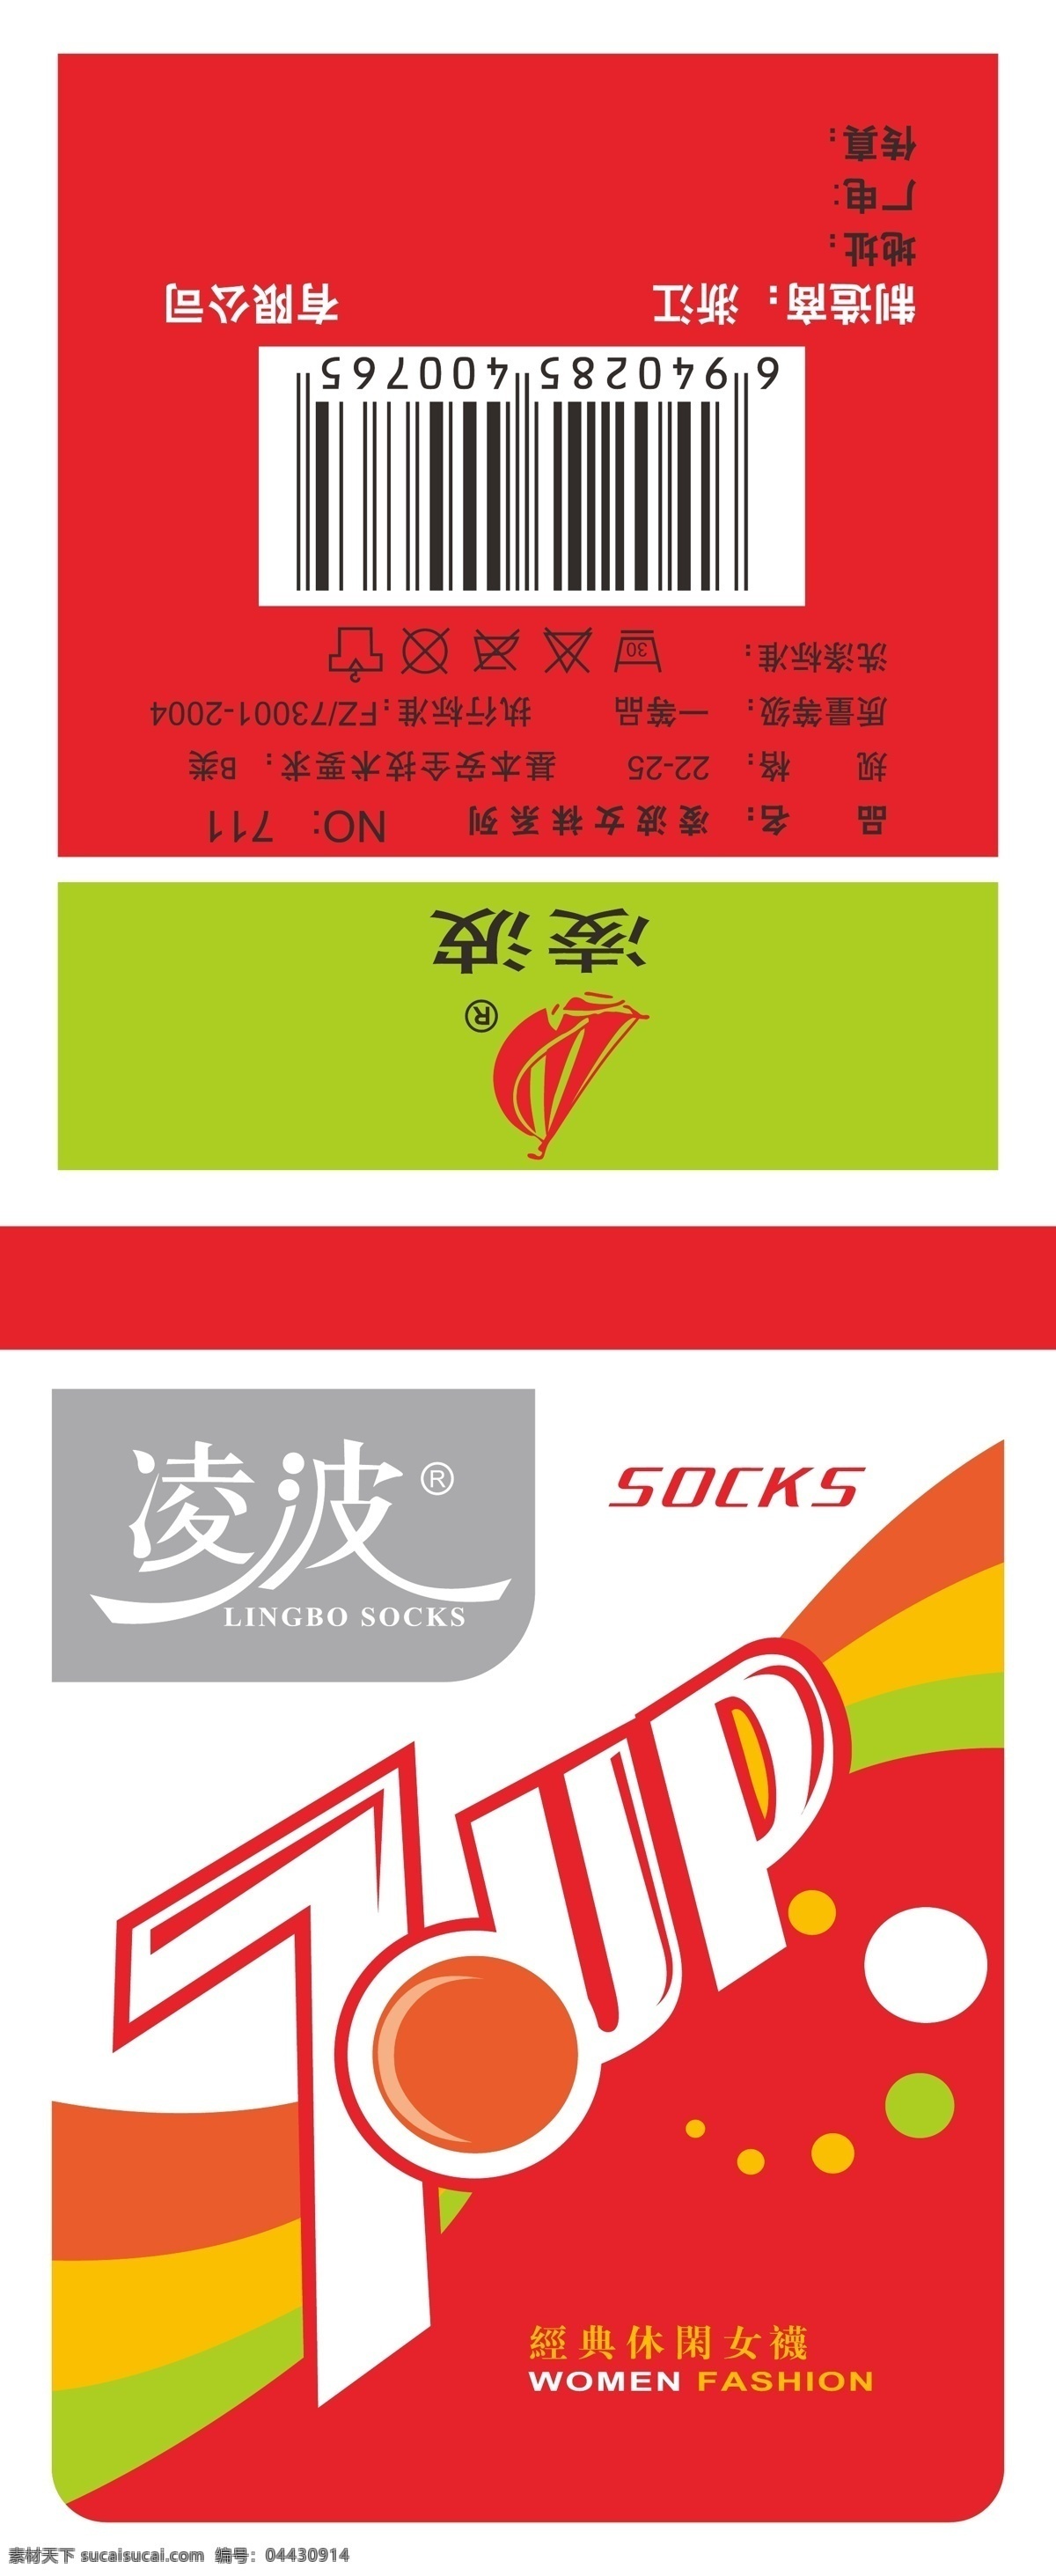 袜子商标 袜子包装 商标设计 包装设计 袜卡 袜标